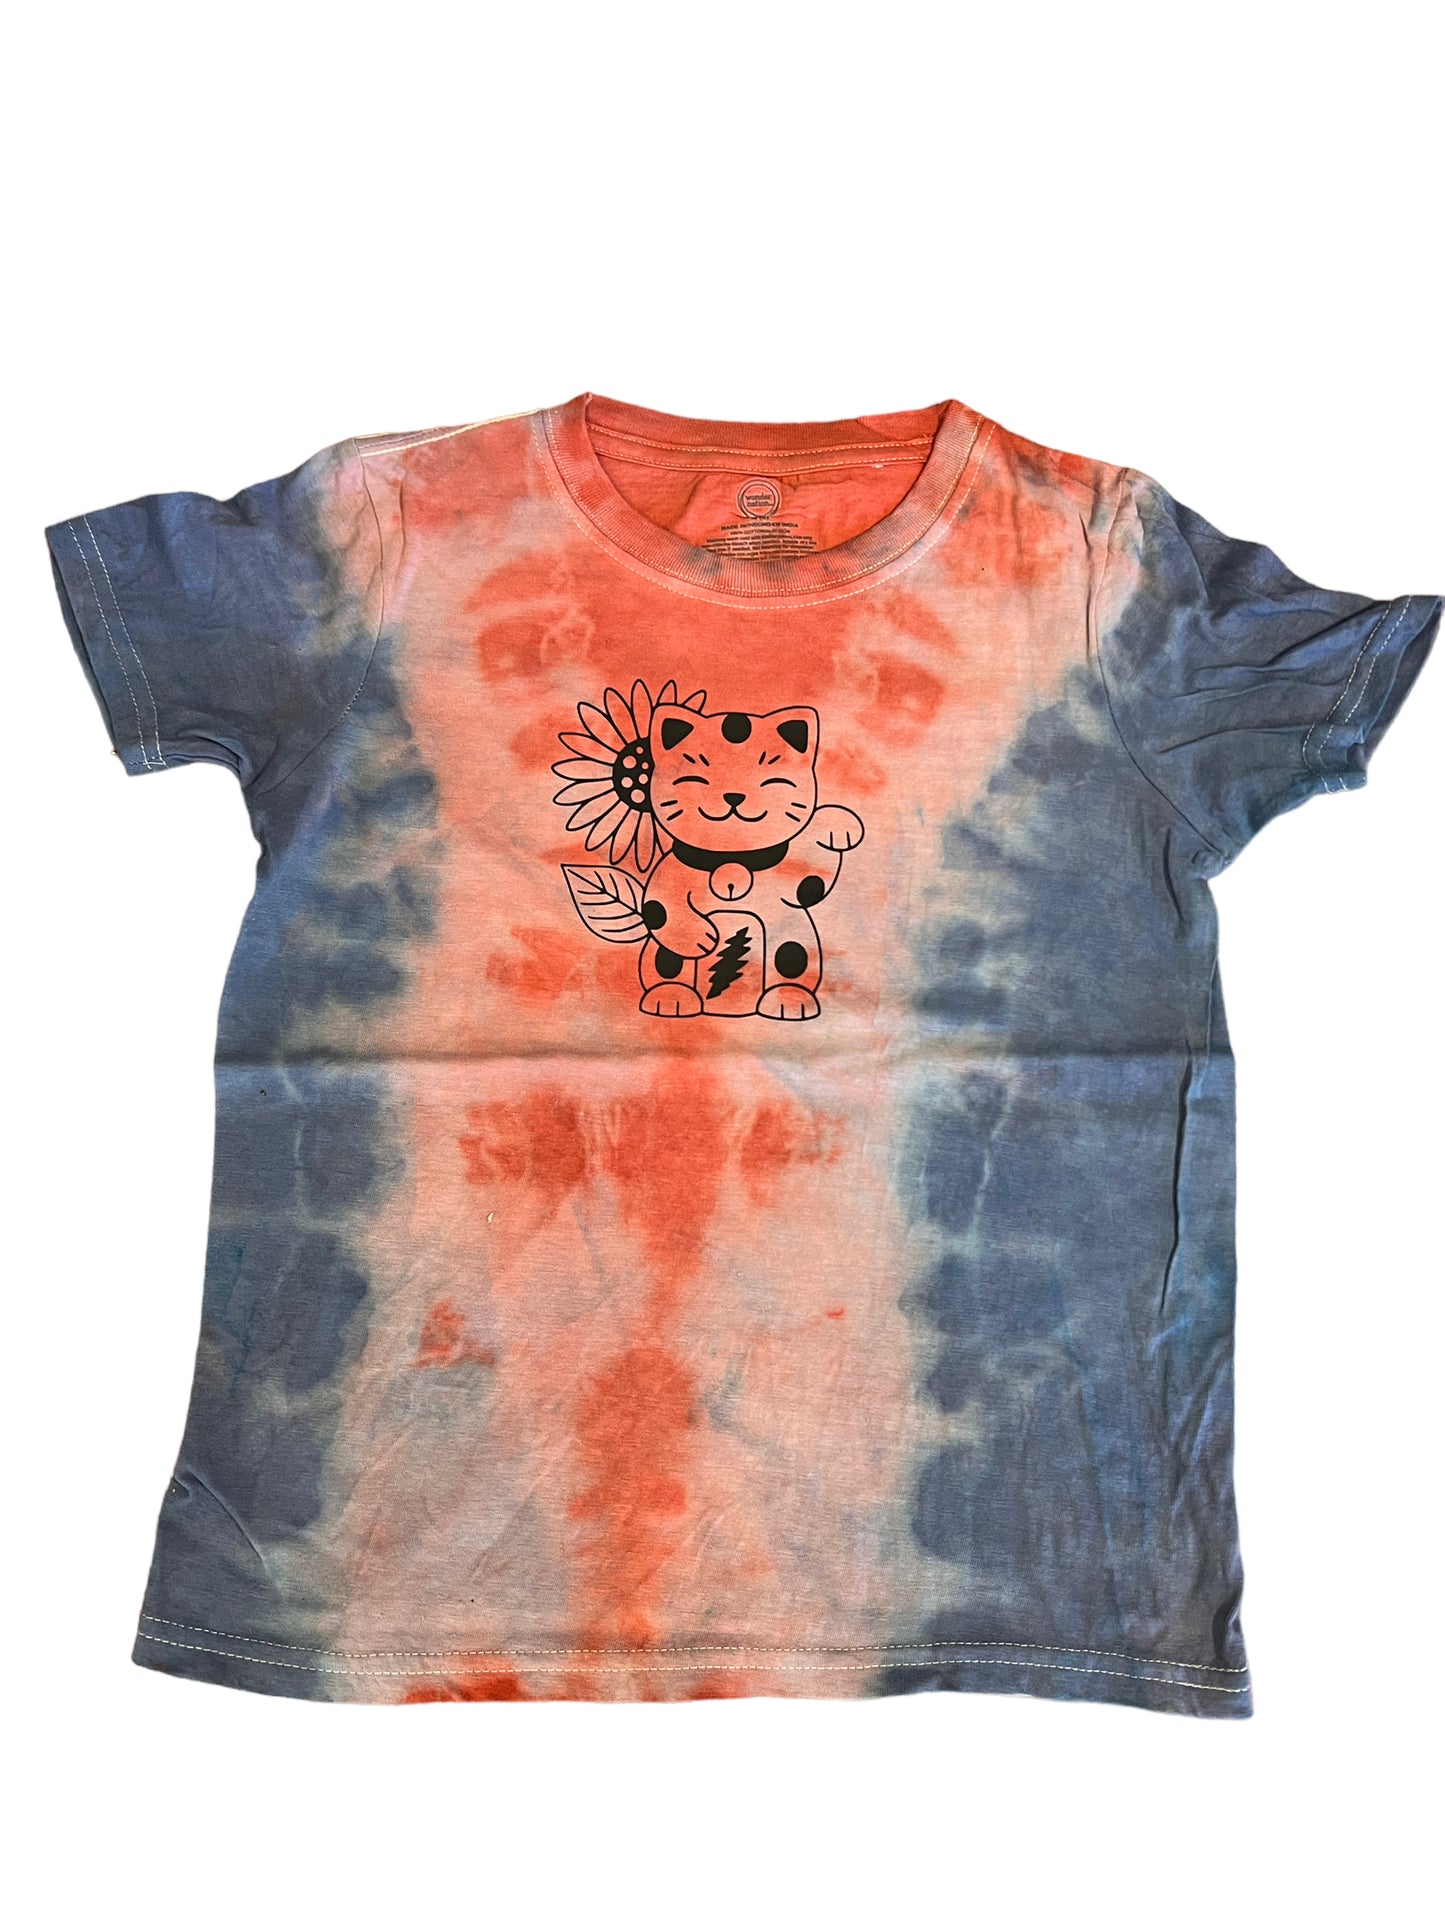 Medium size 8 kids dye shirt - sunflower cat